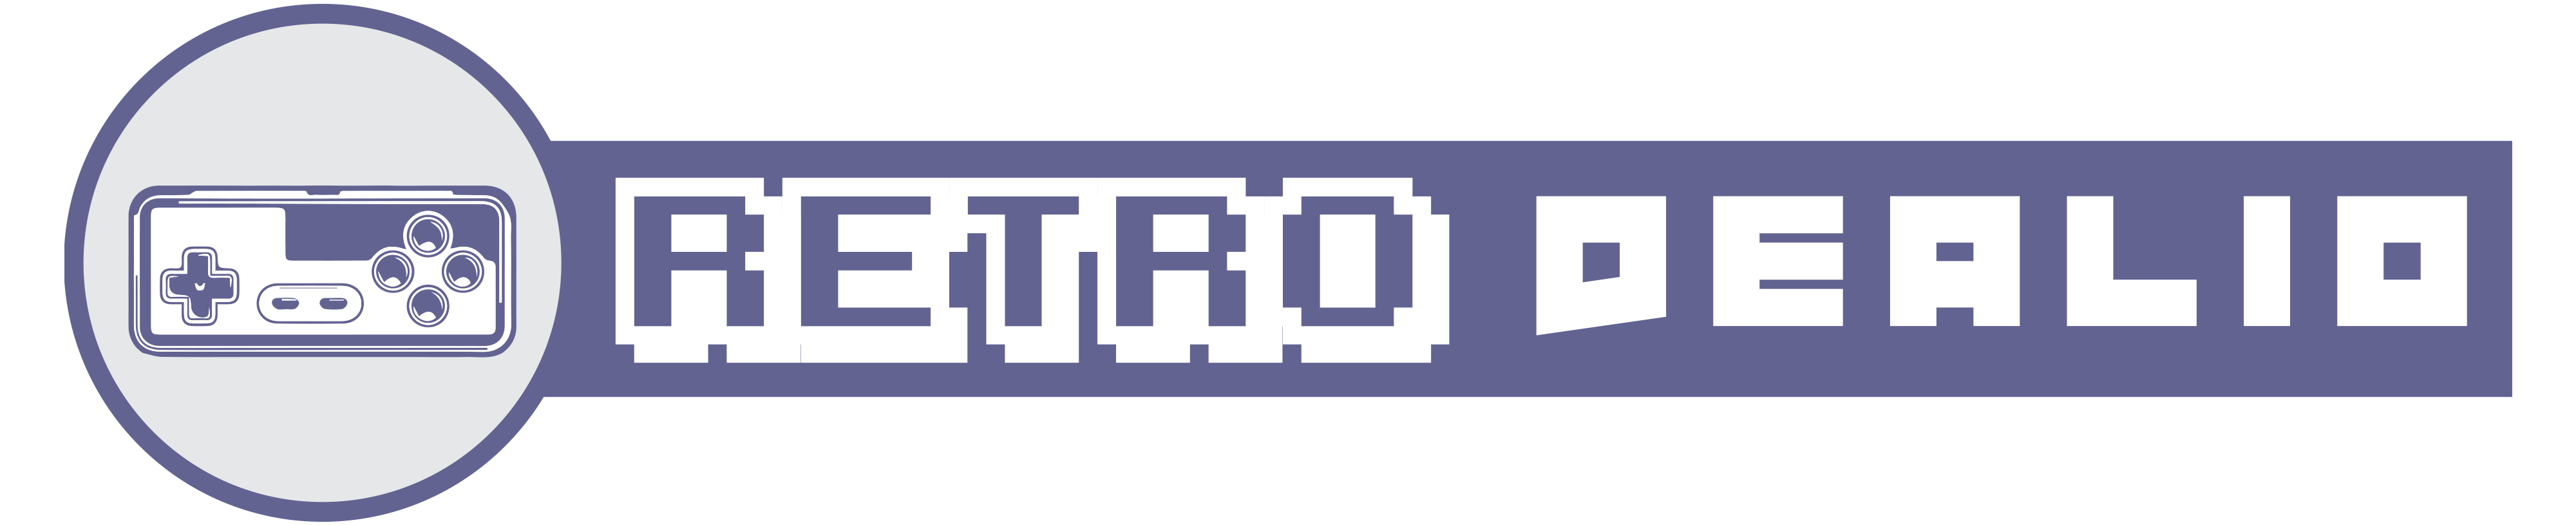 RetroDealio-Logo